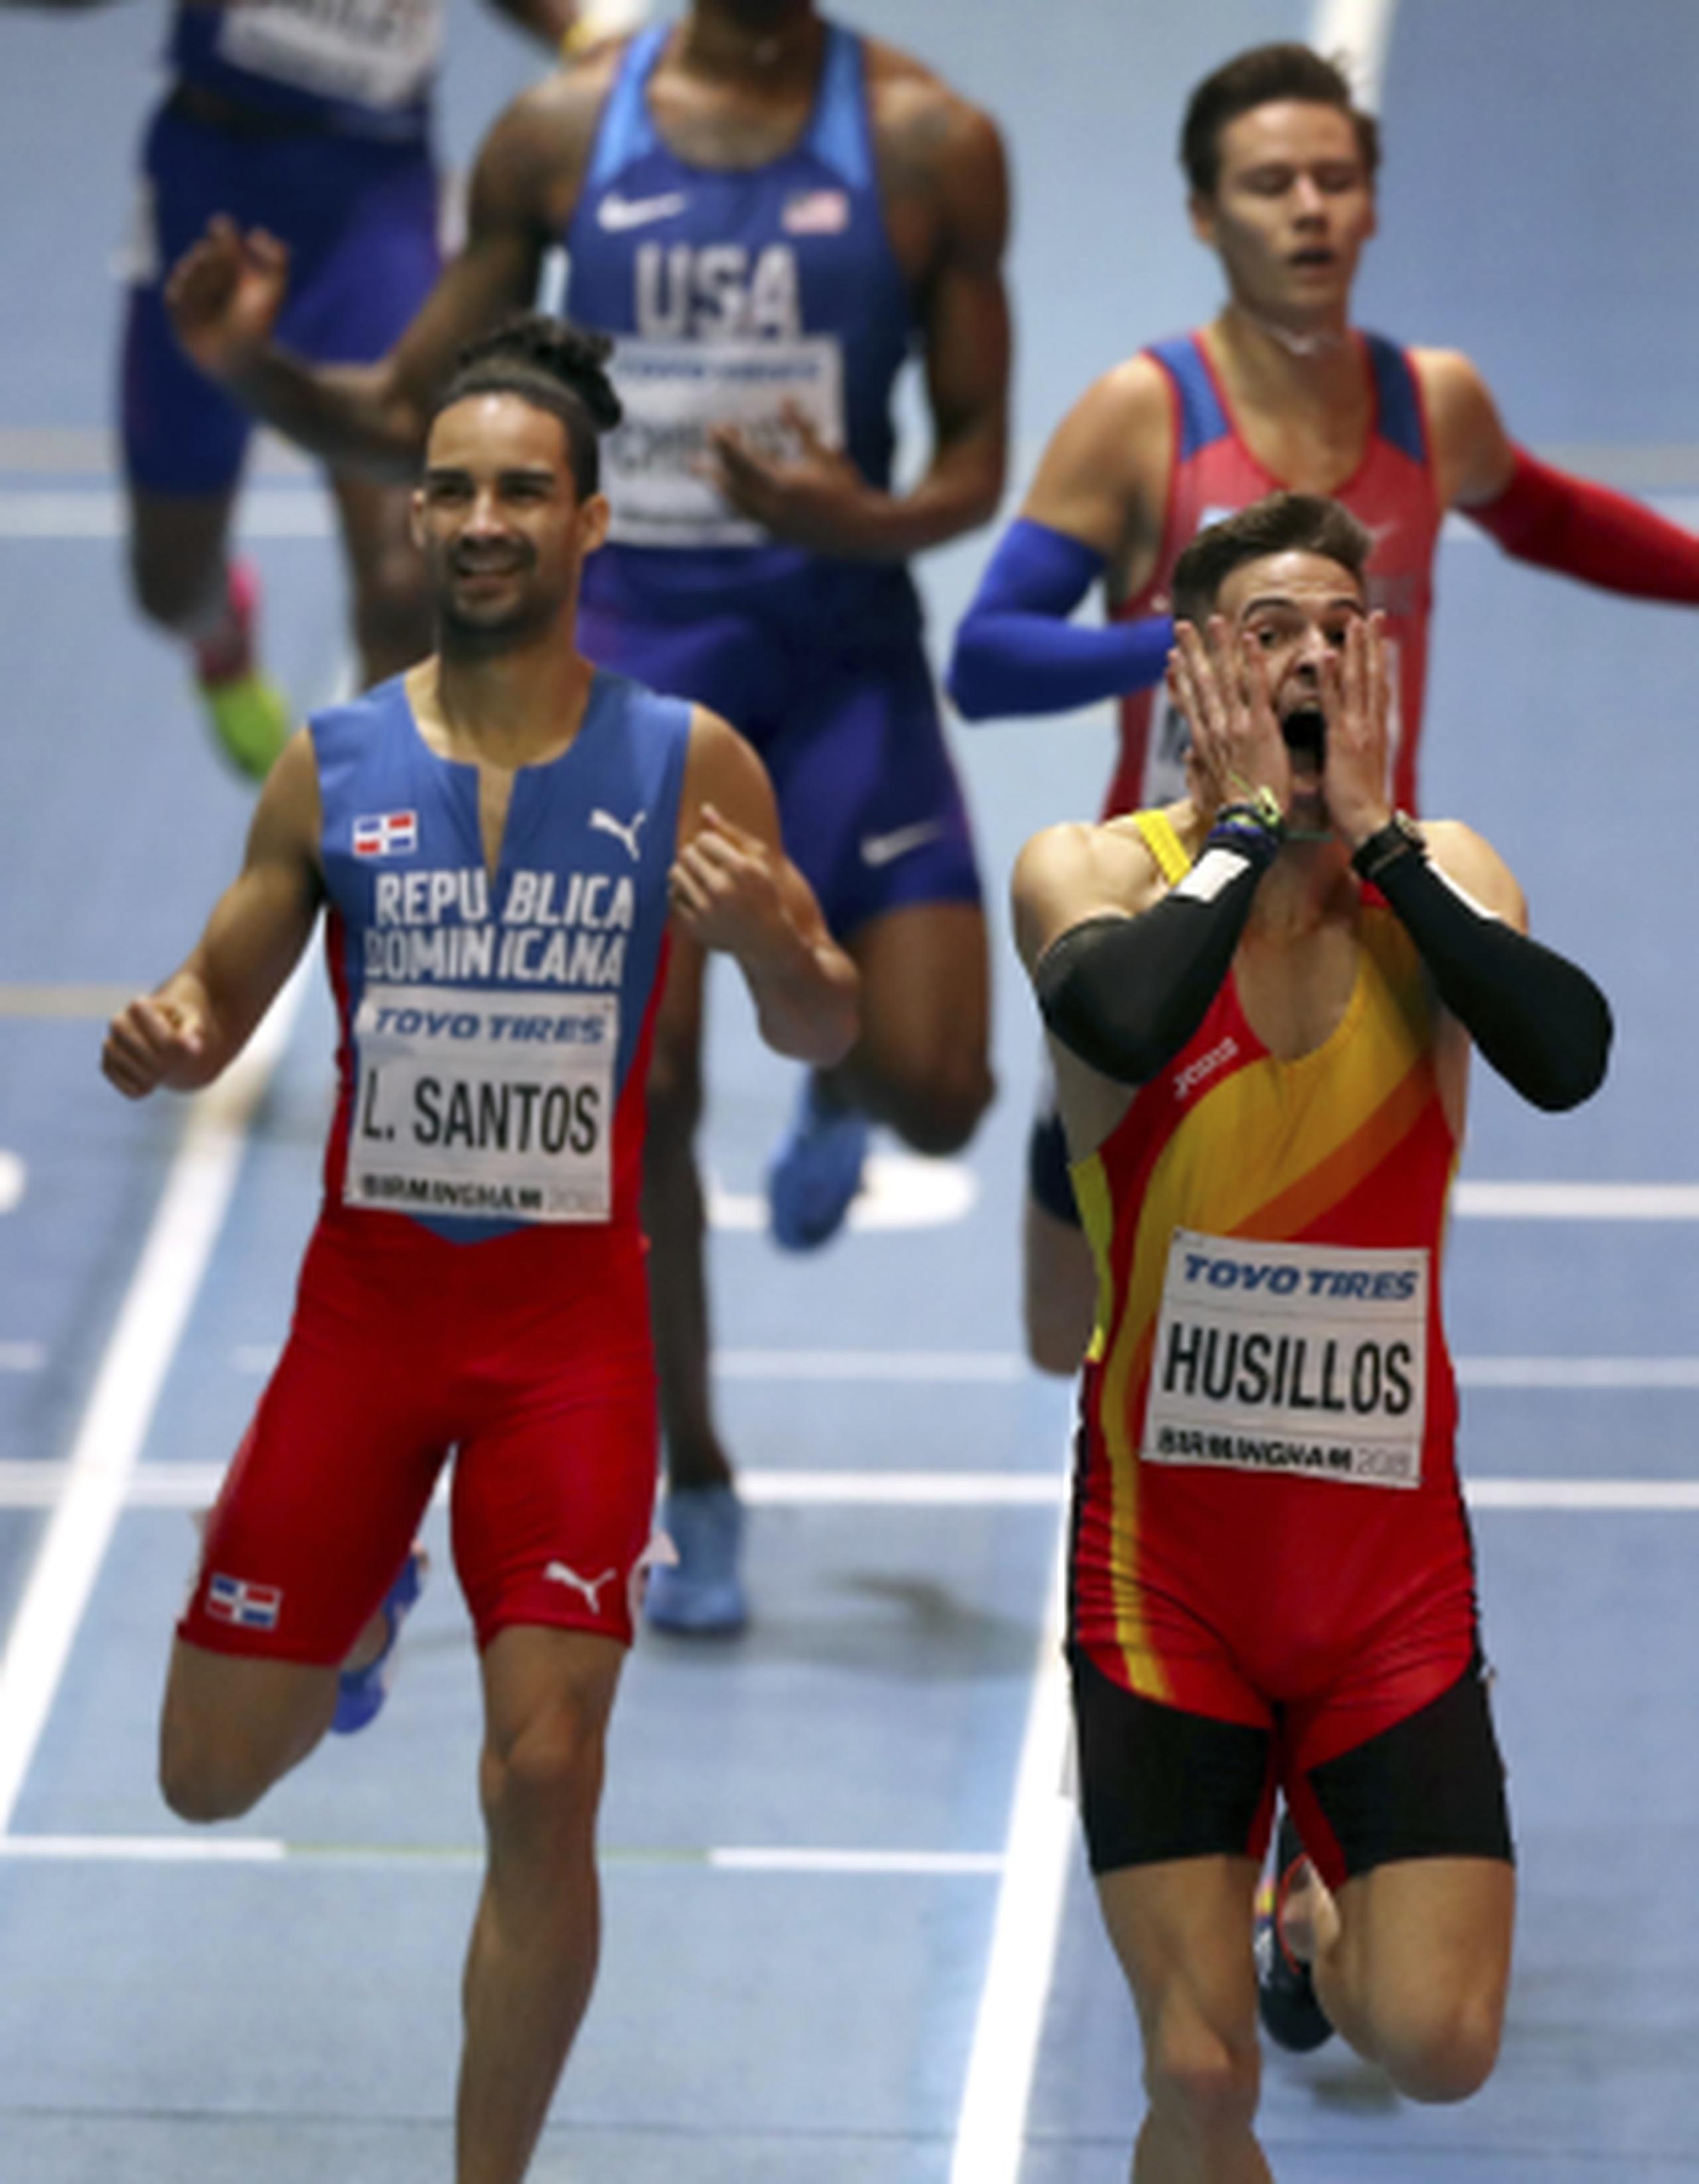 Momento en que Óscar Husillos (derecha) y Luguelín Santos (izquierda) llegan a la meta. (AP)